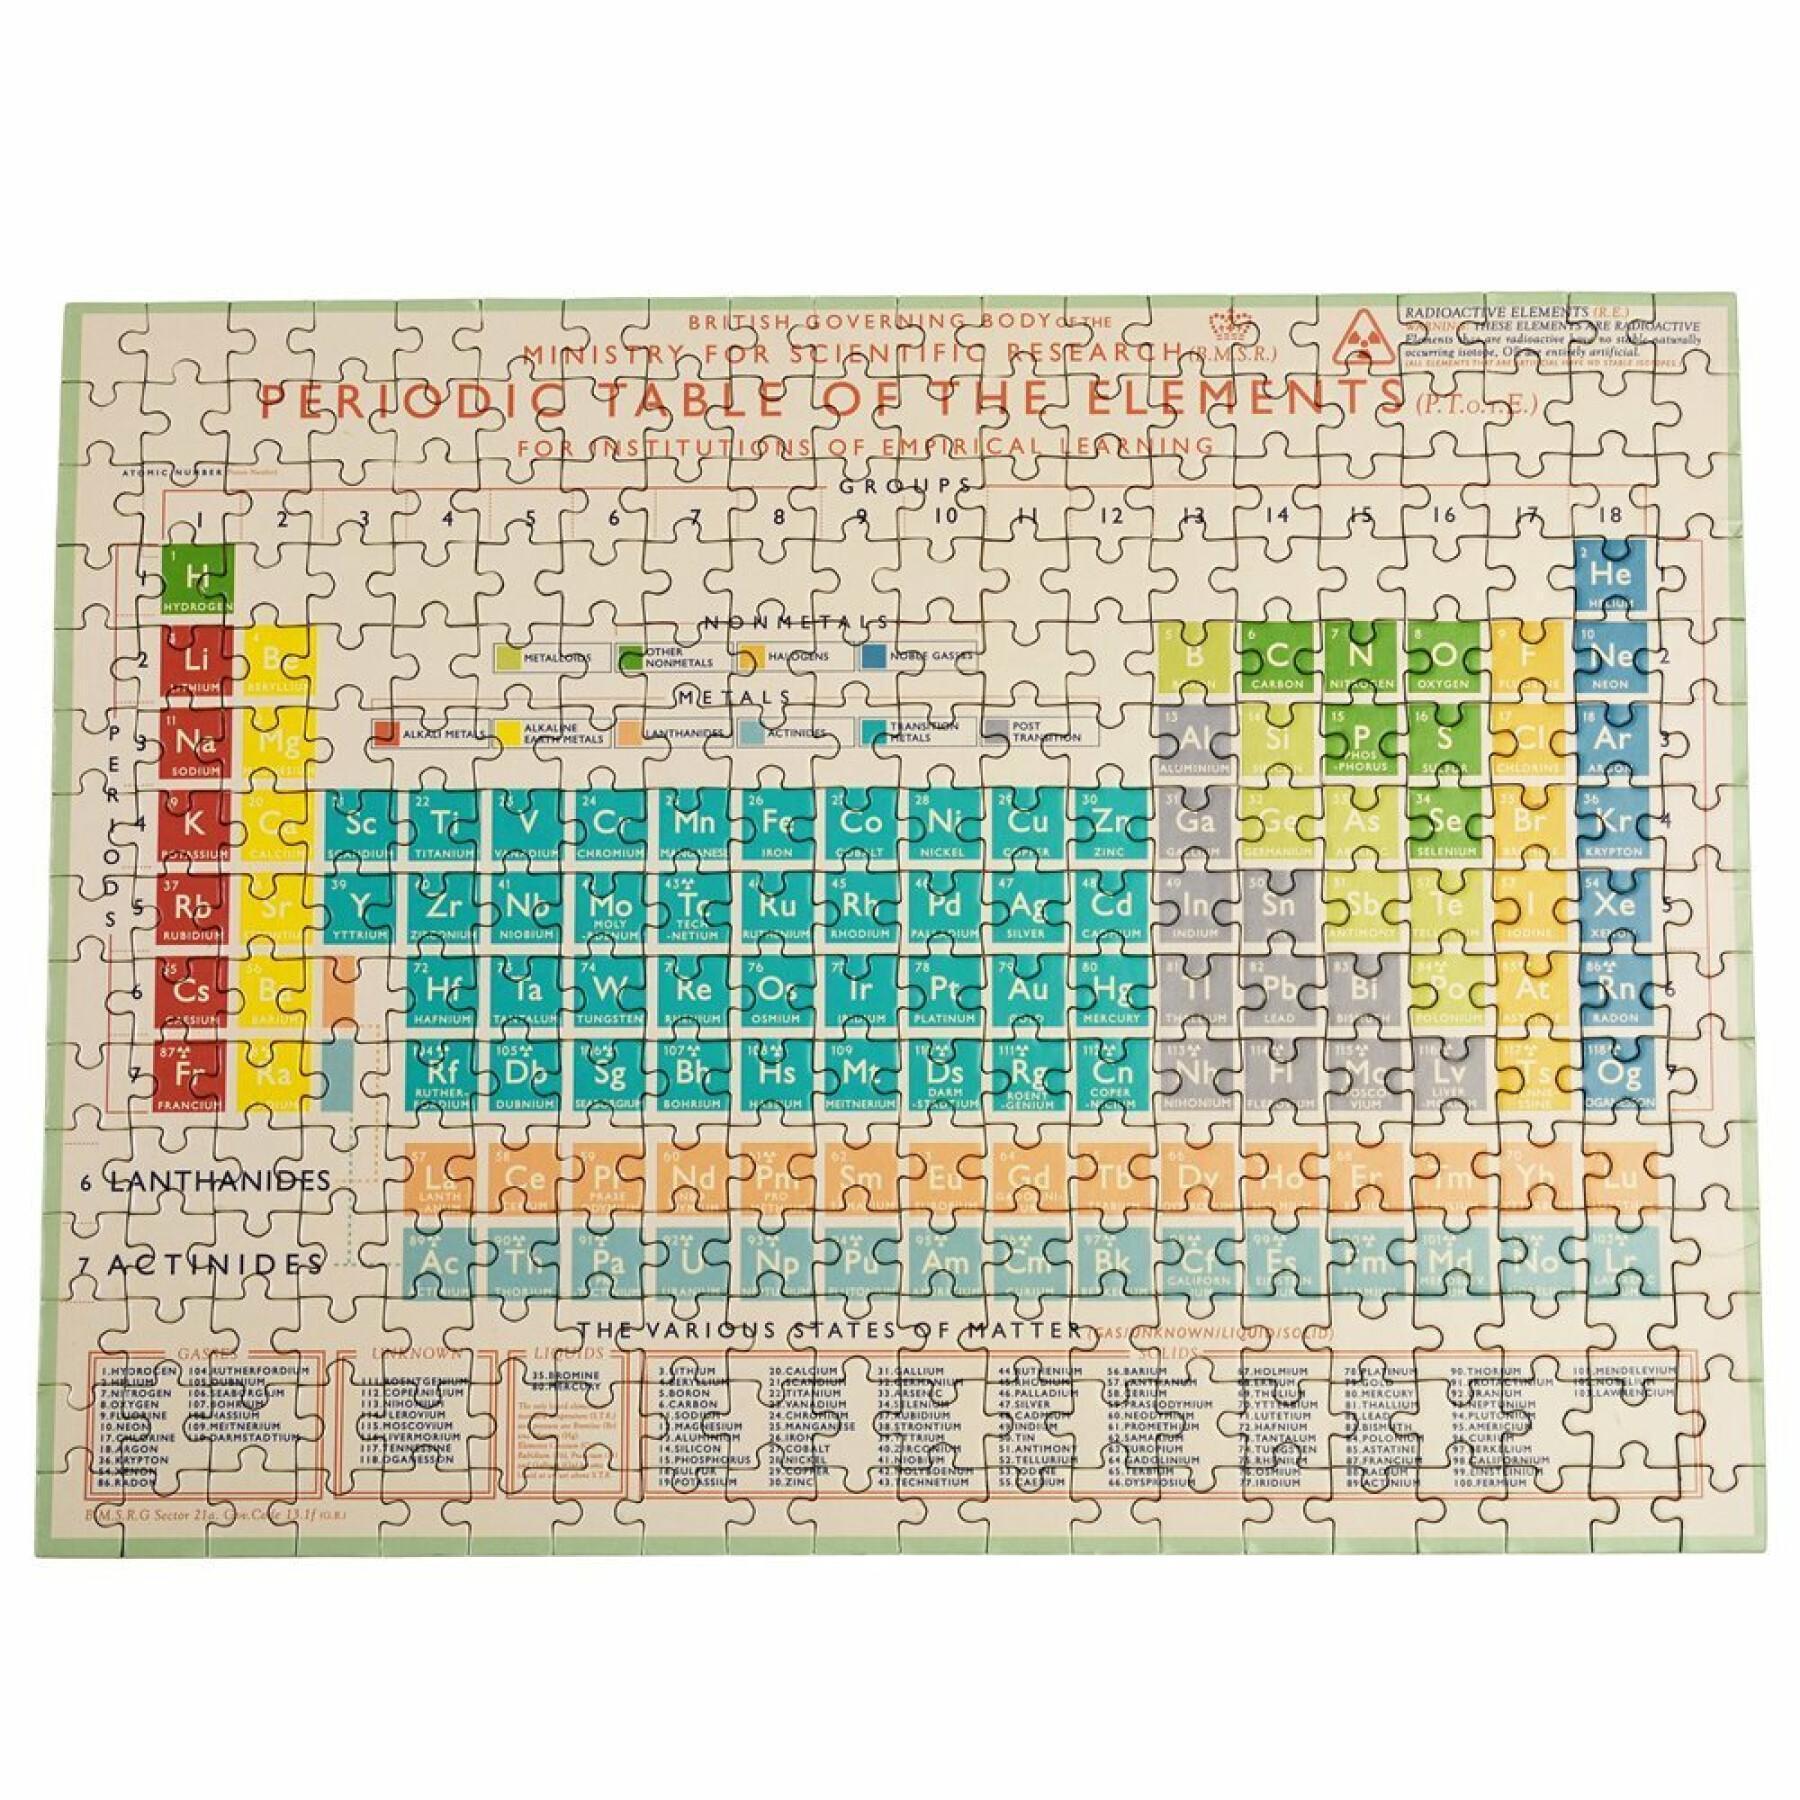 Puzzle de 300 peças Rex London Periodic Table